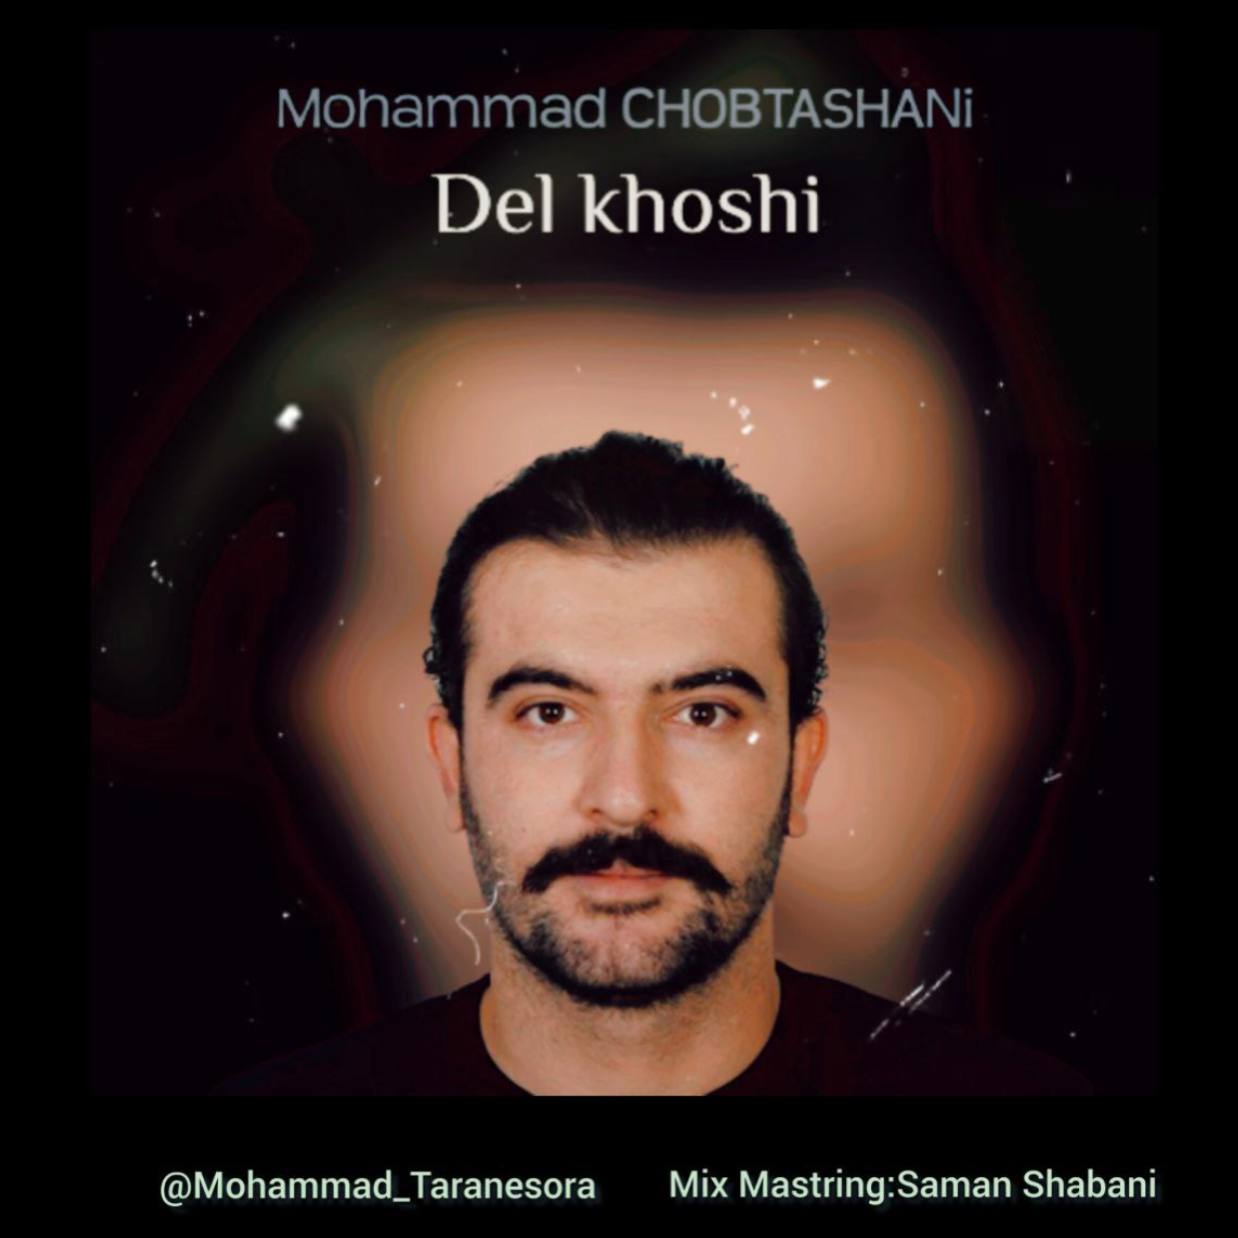 محمد چوبتشانی - دلخوشی